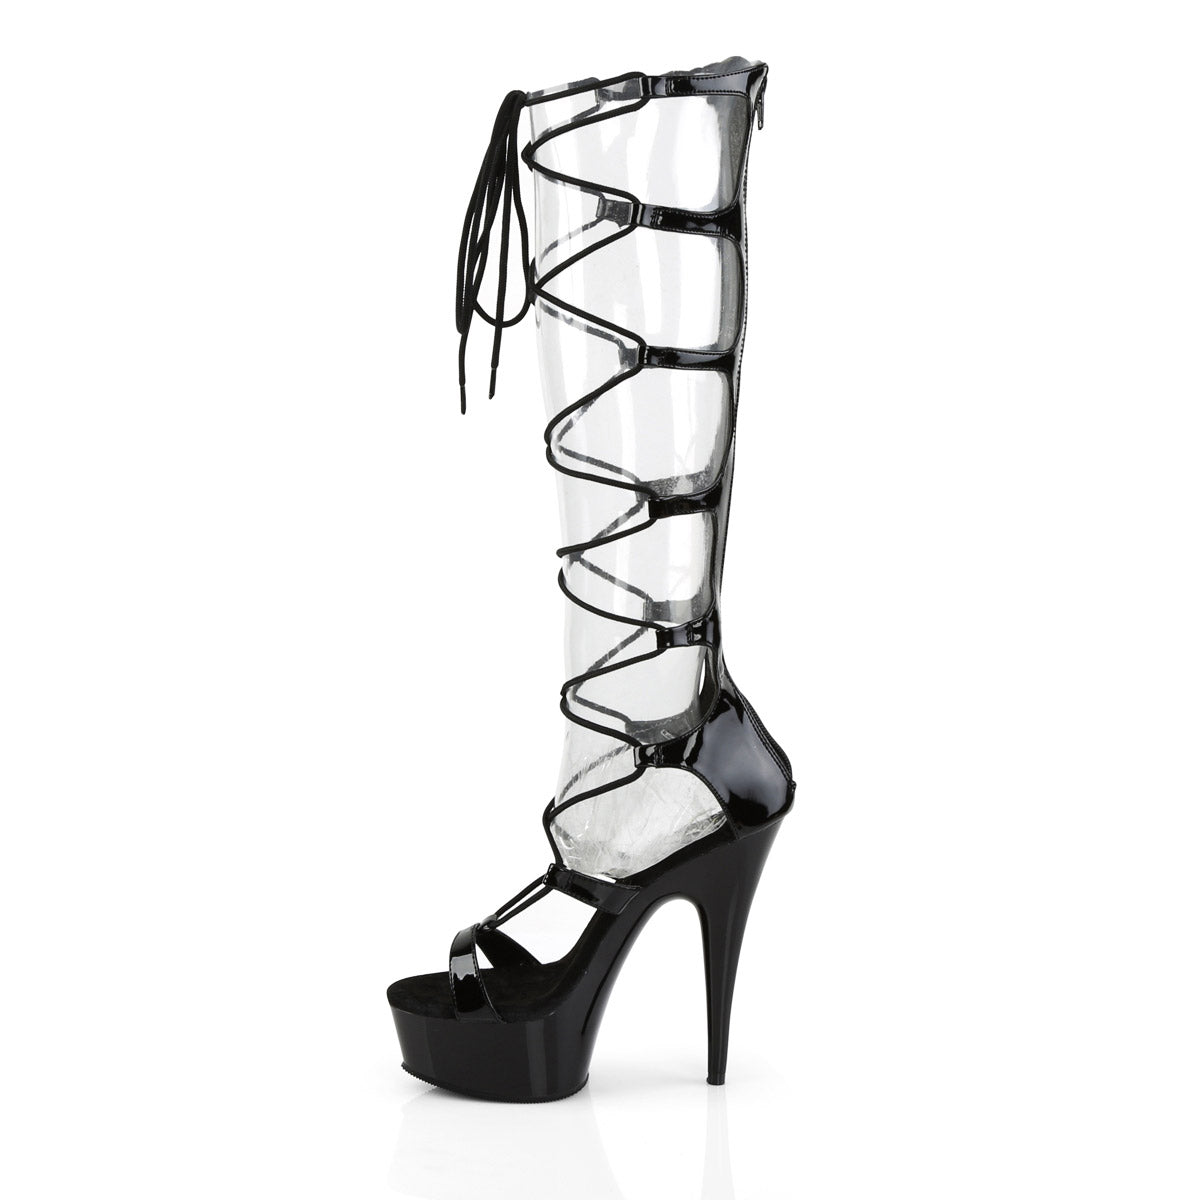 UUNDA Fashion black strap Lace Up heels